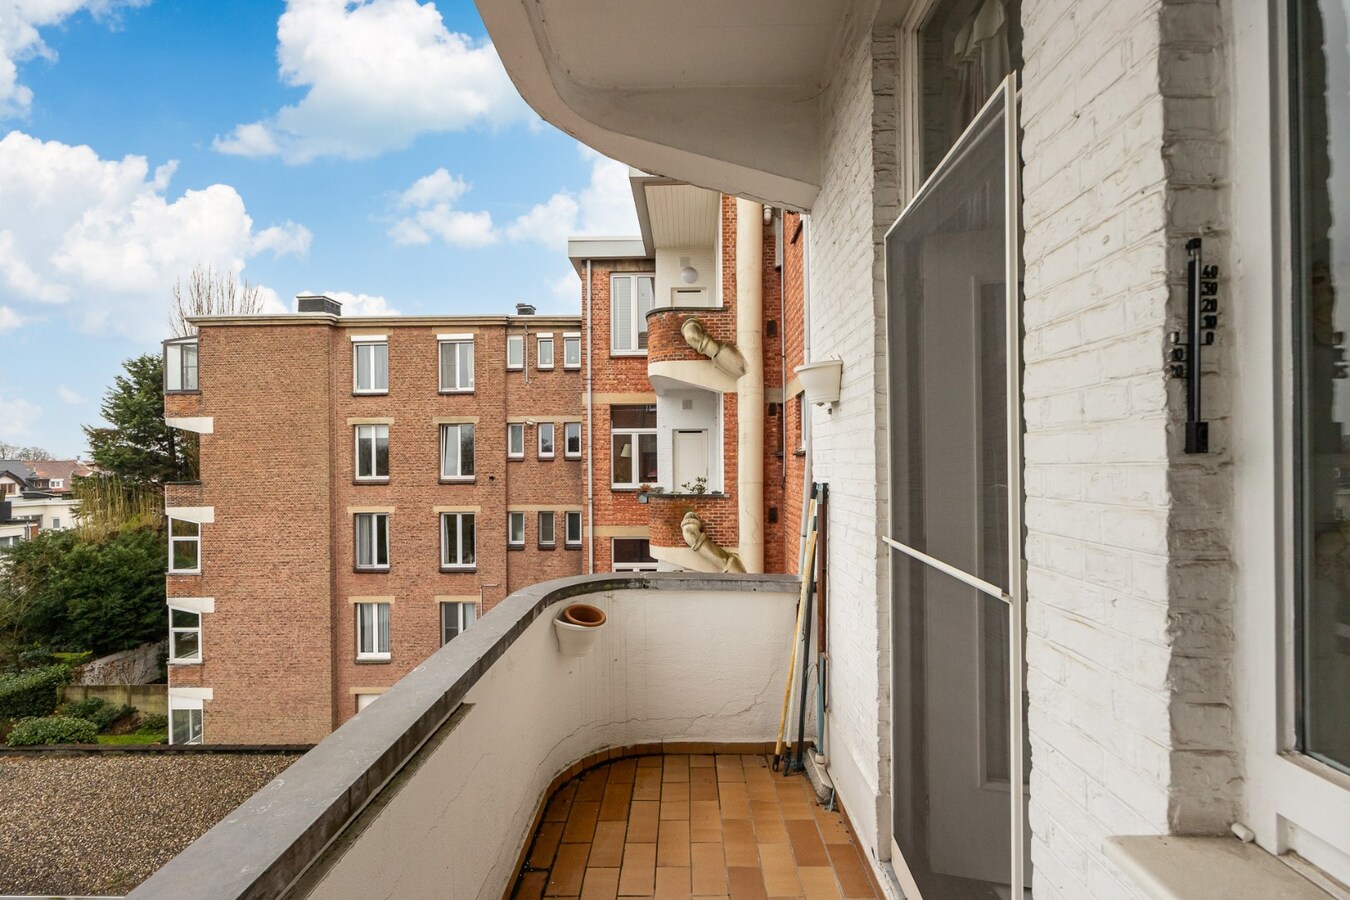 Ruim appartement met terras, garage en 3 slaapkamers in parkwijk Den Brandt 